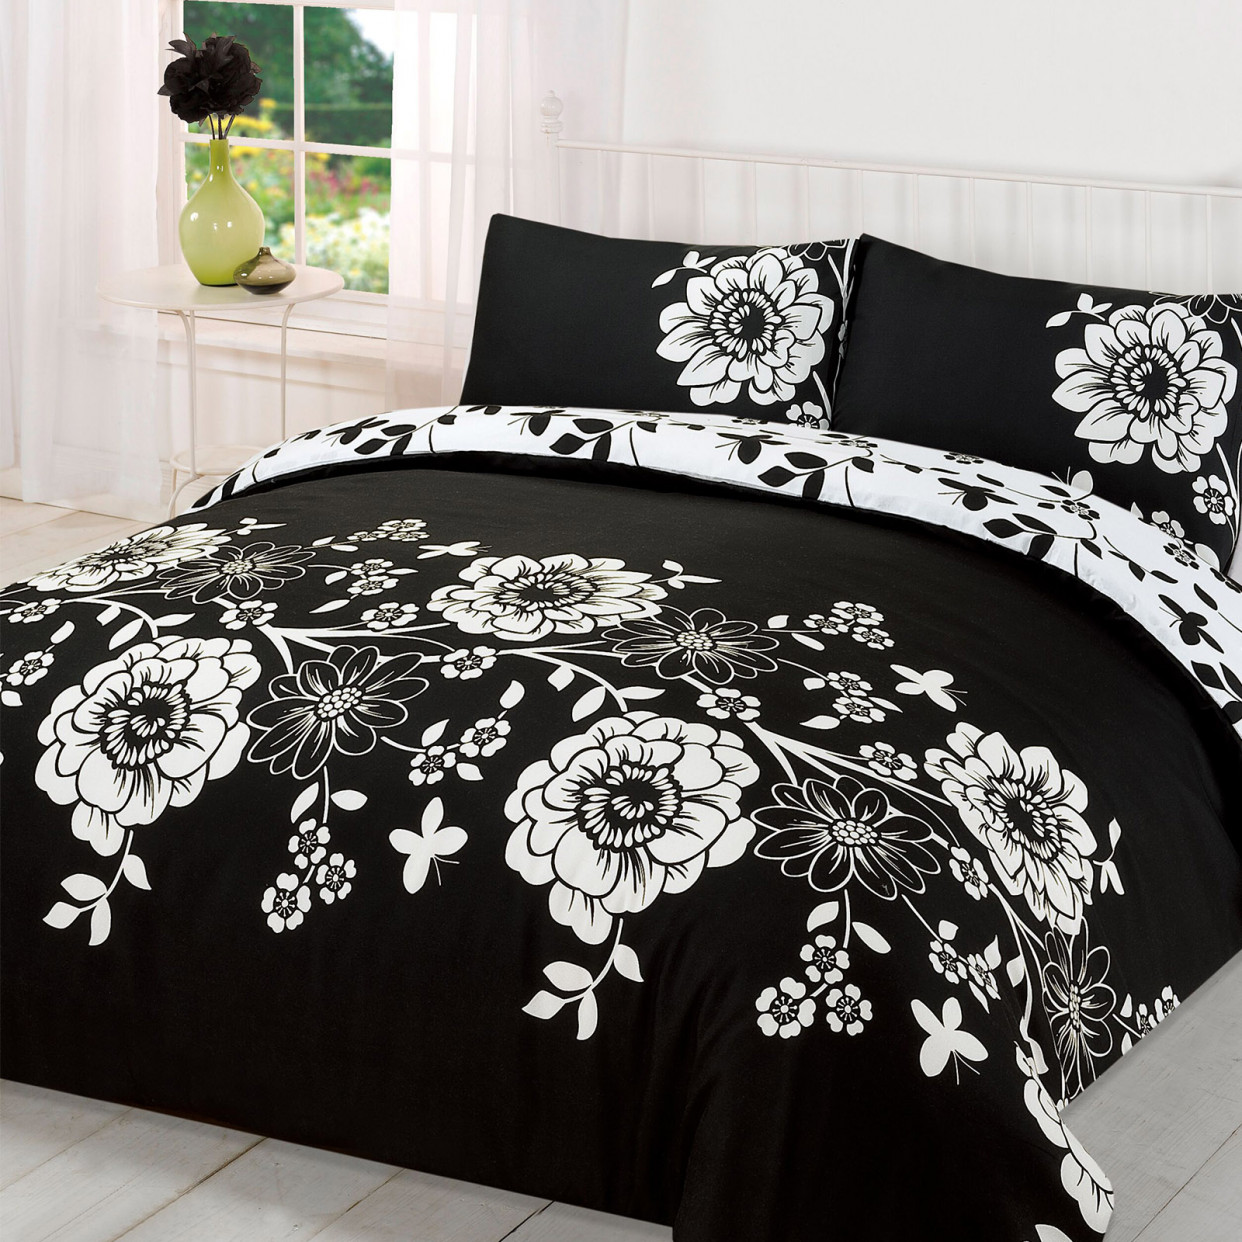 Roslyn Duvet Cover with pillowcase set - Black/White - King Size  >